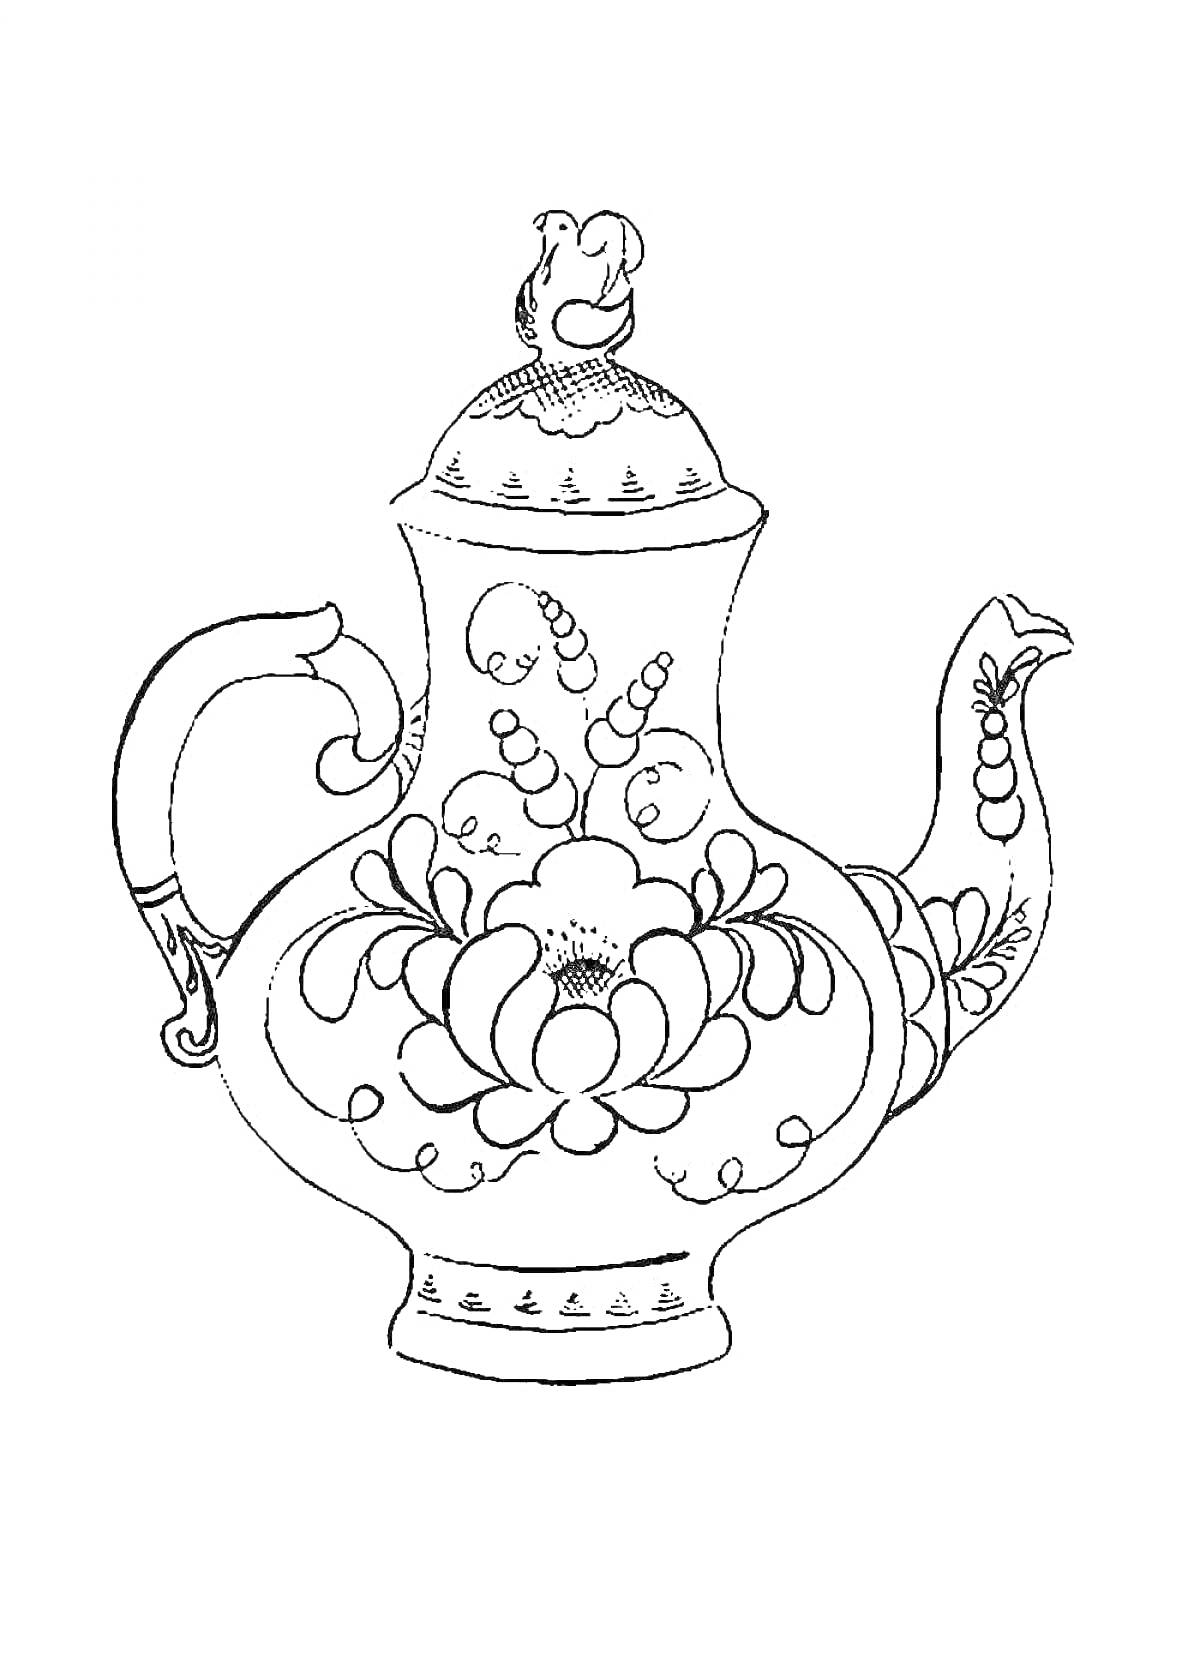 Раскраска Гжельский чайник с цветами и птицей